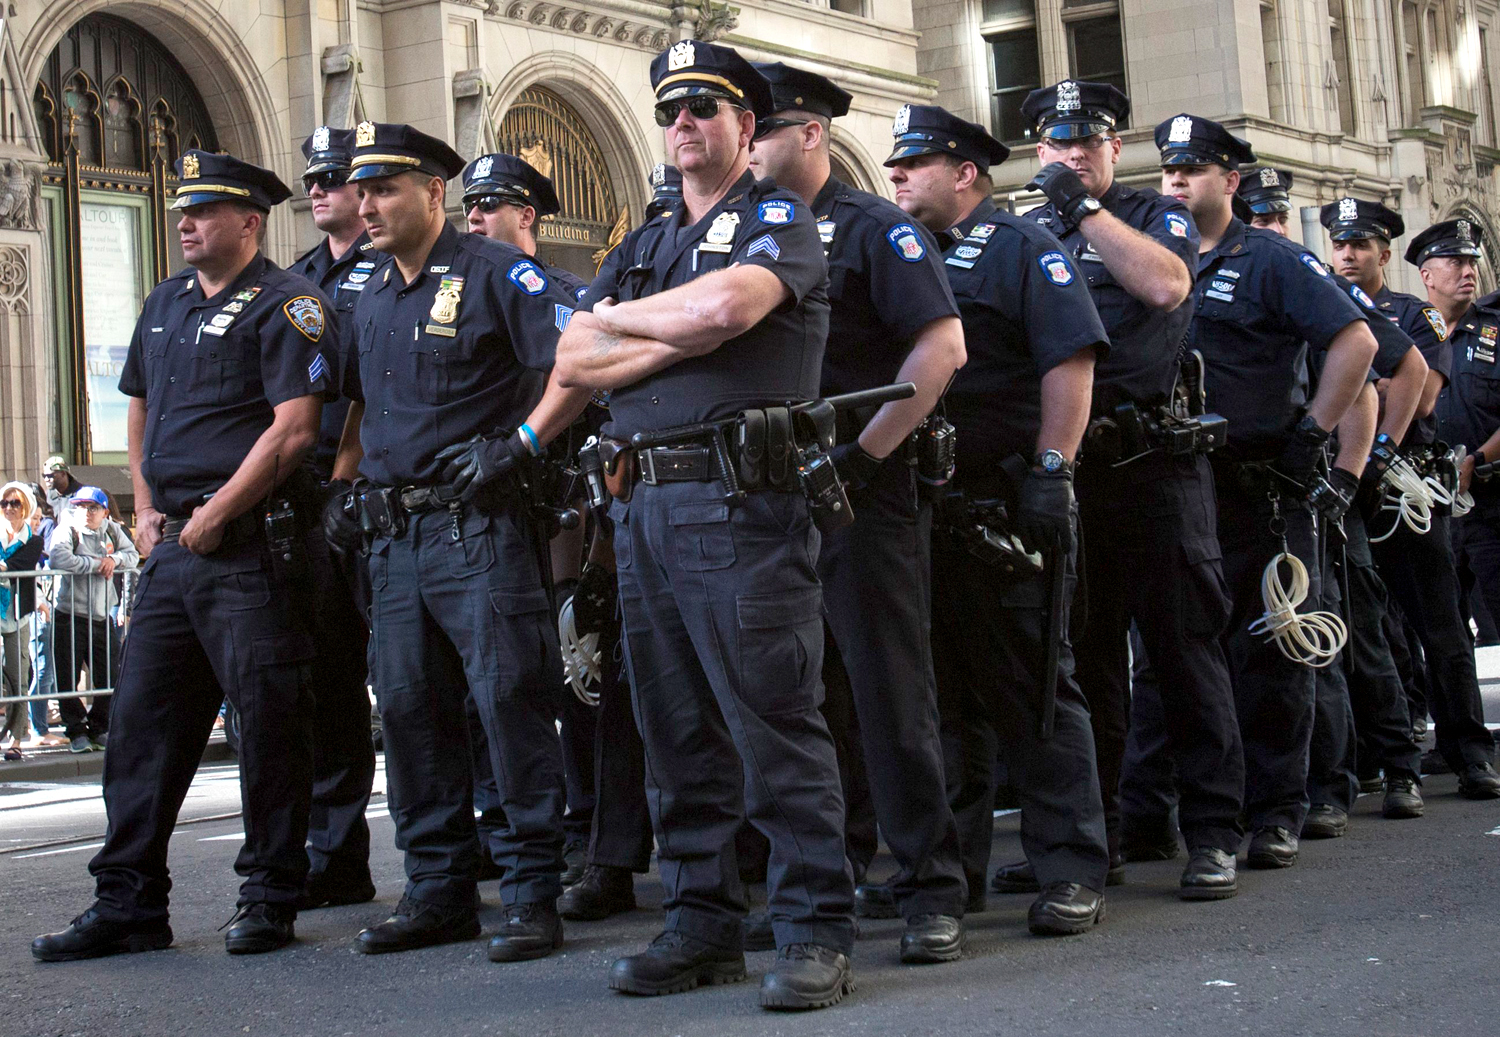 A rendőrök szemmel tartották a New York pénzügyi negyedében tüntetőket